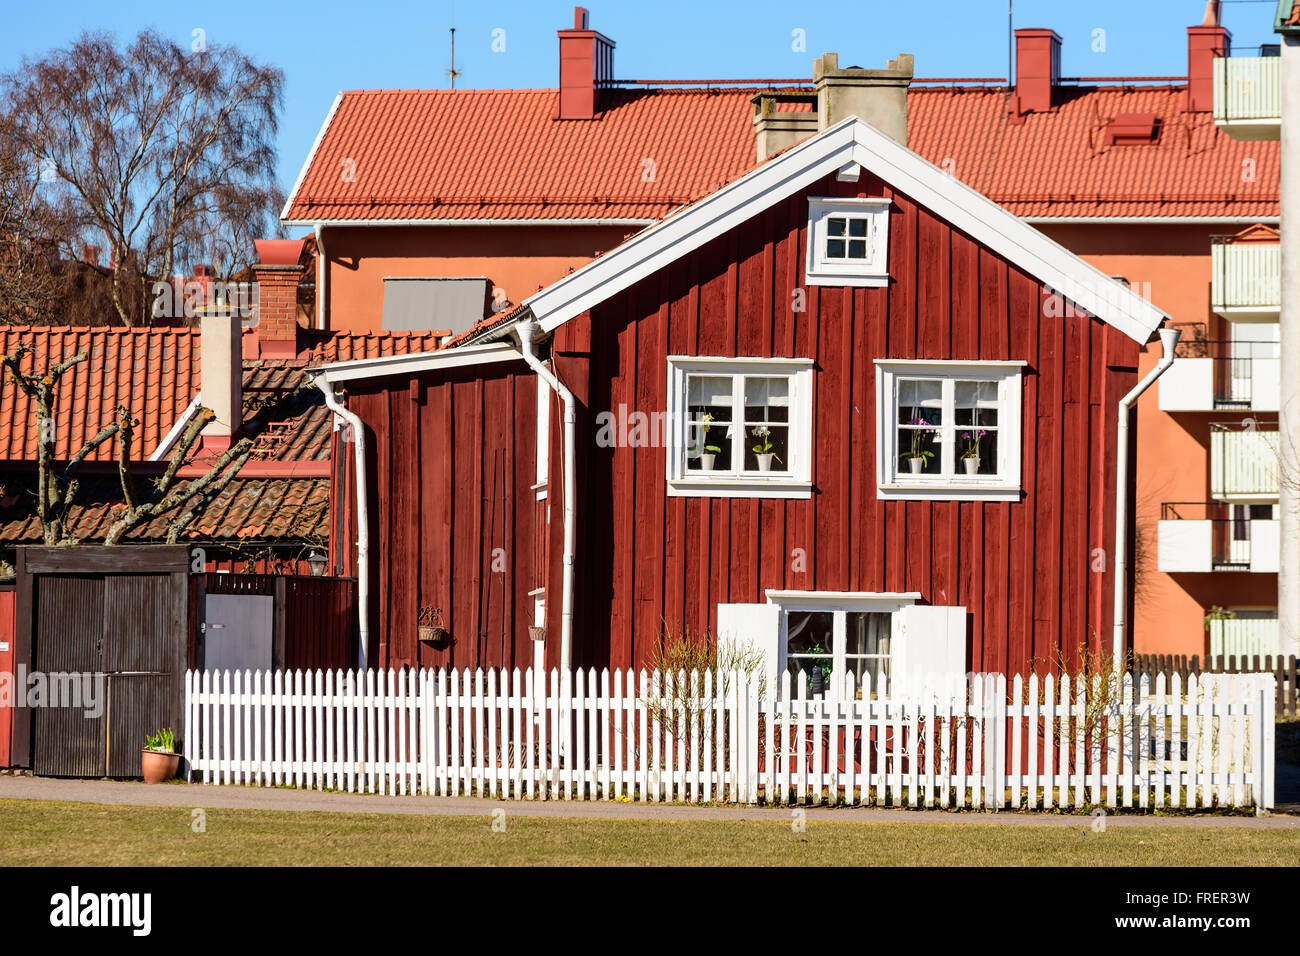 Kalmar, Suède - le 17 mars 2016 : Une vieille maison en bois rouge au milieu de la ville, avec des bâtiments modernes à l'arrière-plan. Whi Banque D'Images